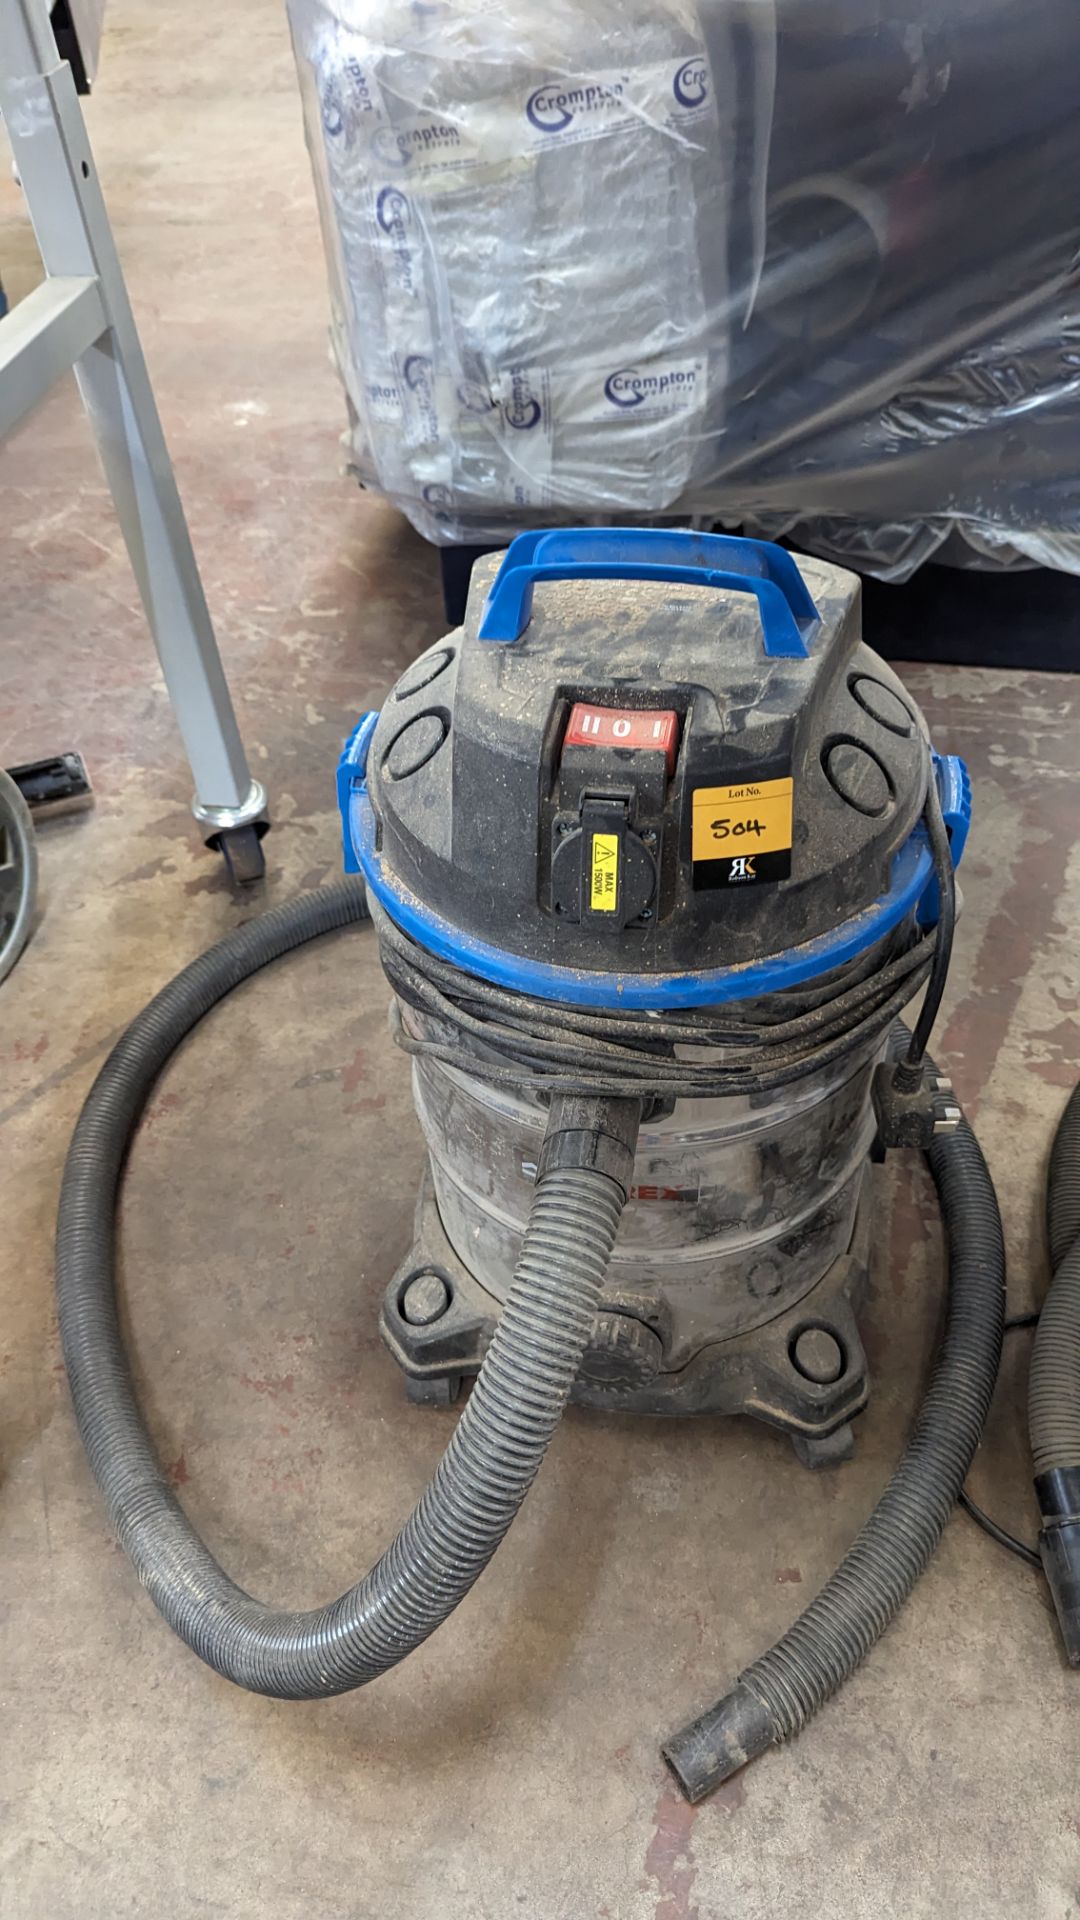 Ferrex industrial vacuum cleaner